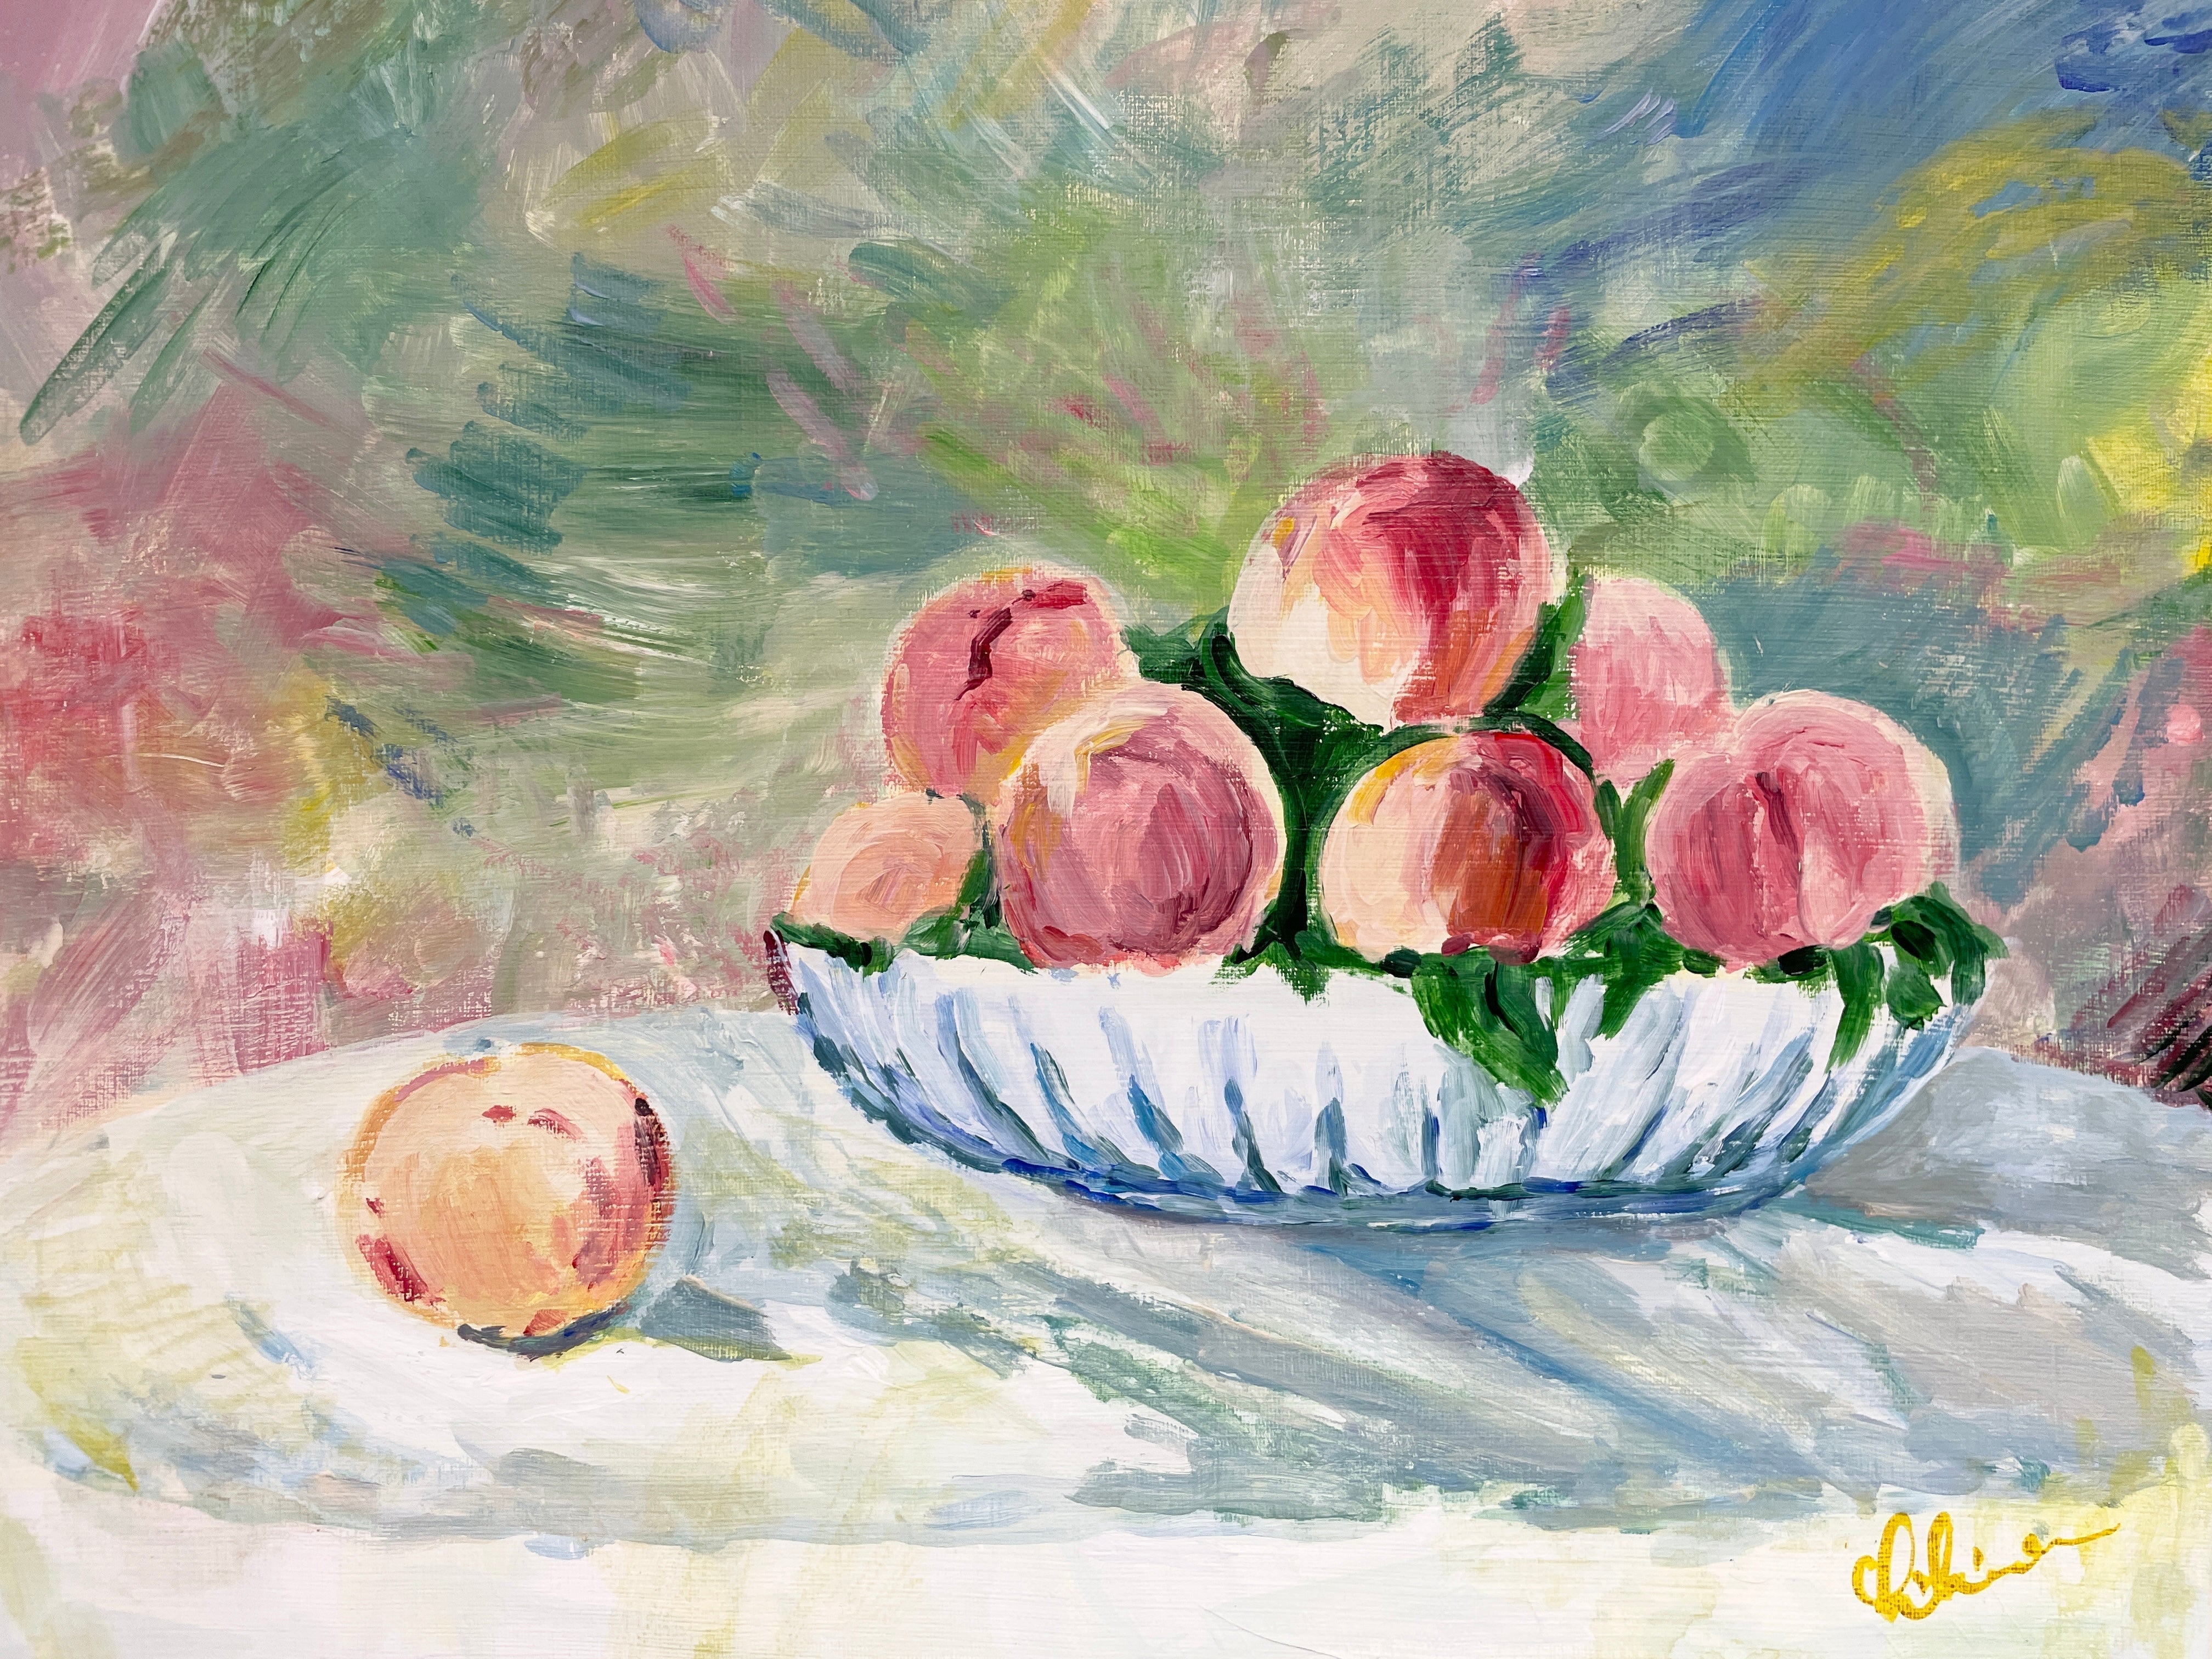 【日本橋】3月10日 (日) 14:00-17:00 | オーギュスト・ルノワール | 桃の静物画 (Peach Still-life Painting by Pierre-Auguste Renoir at Nihon-bashi)